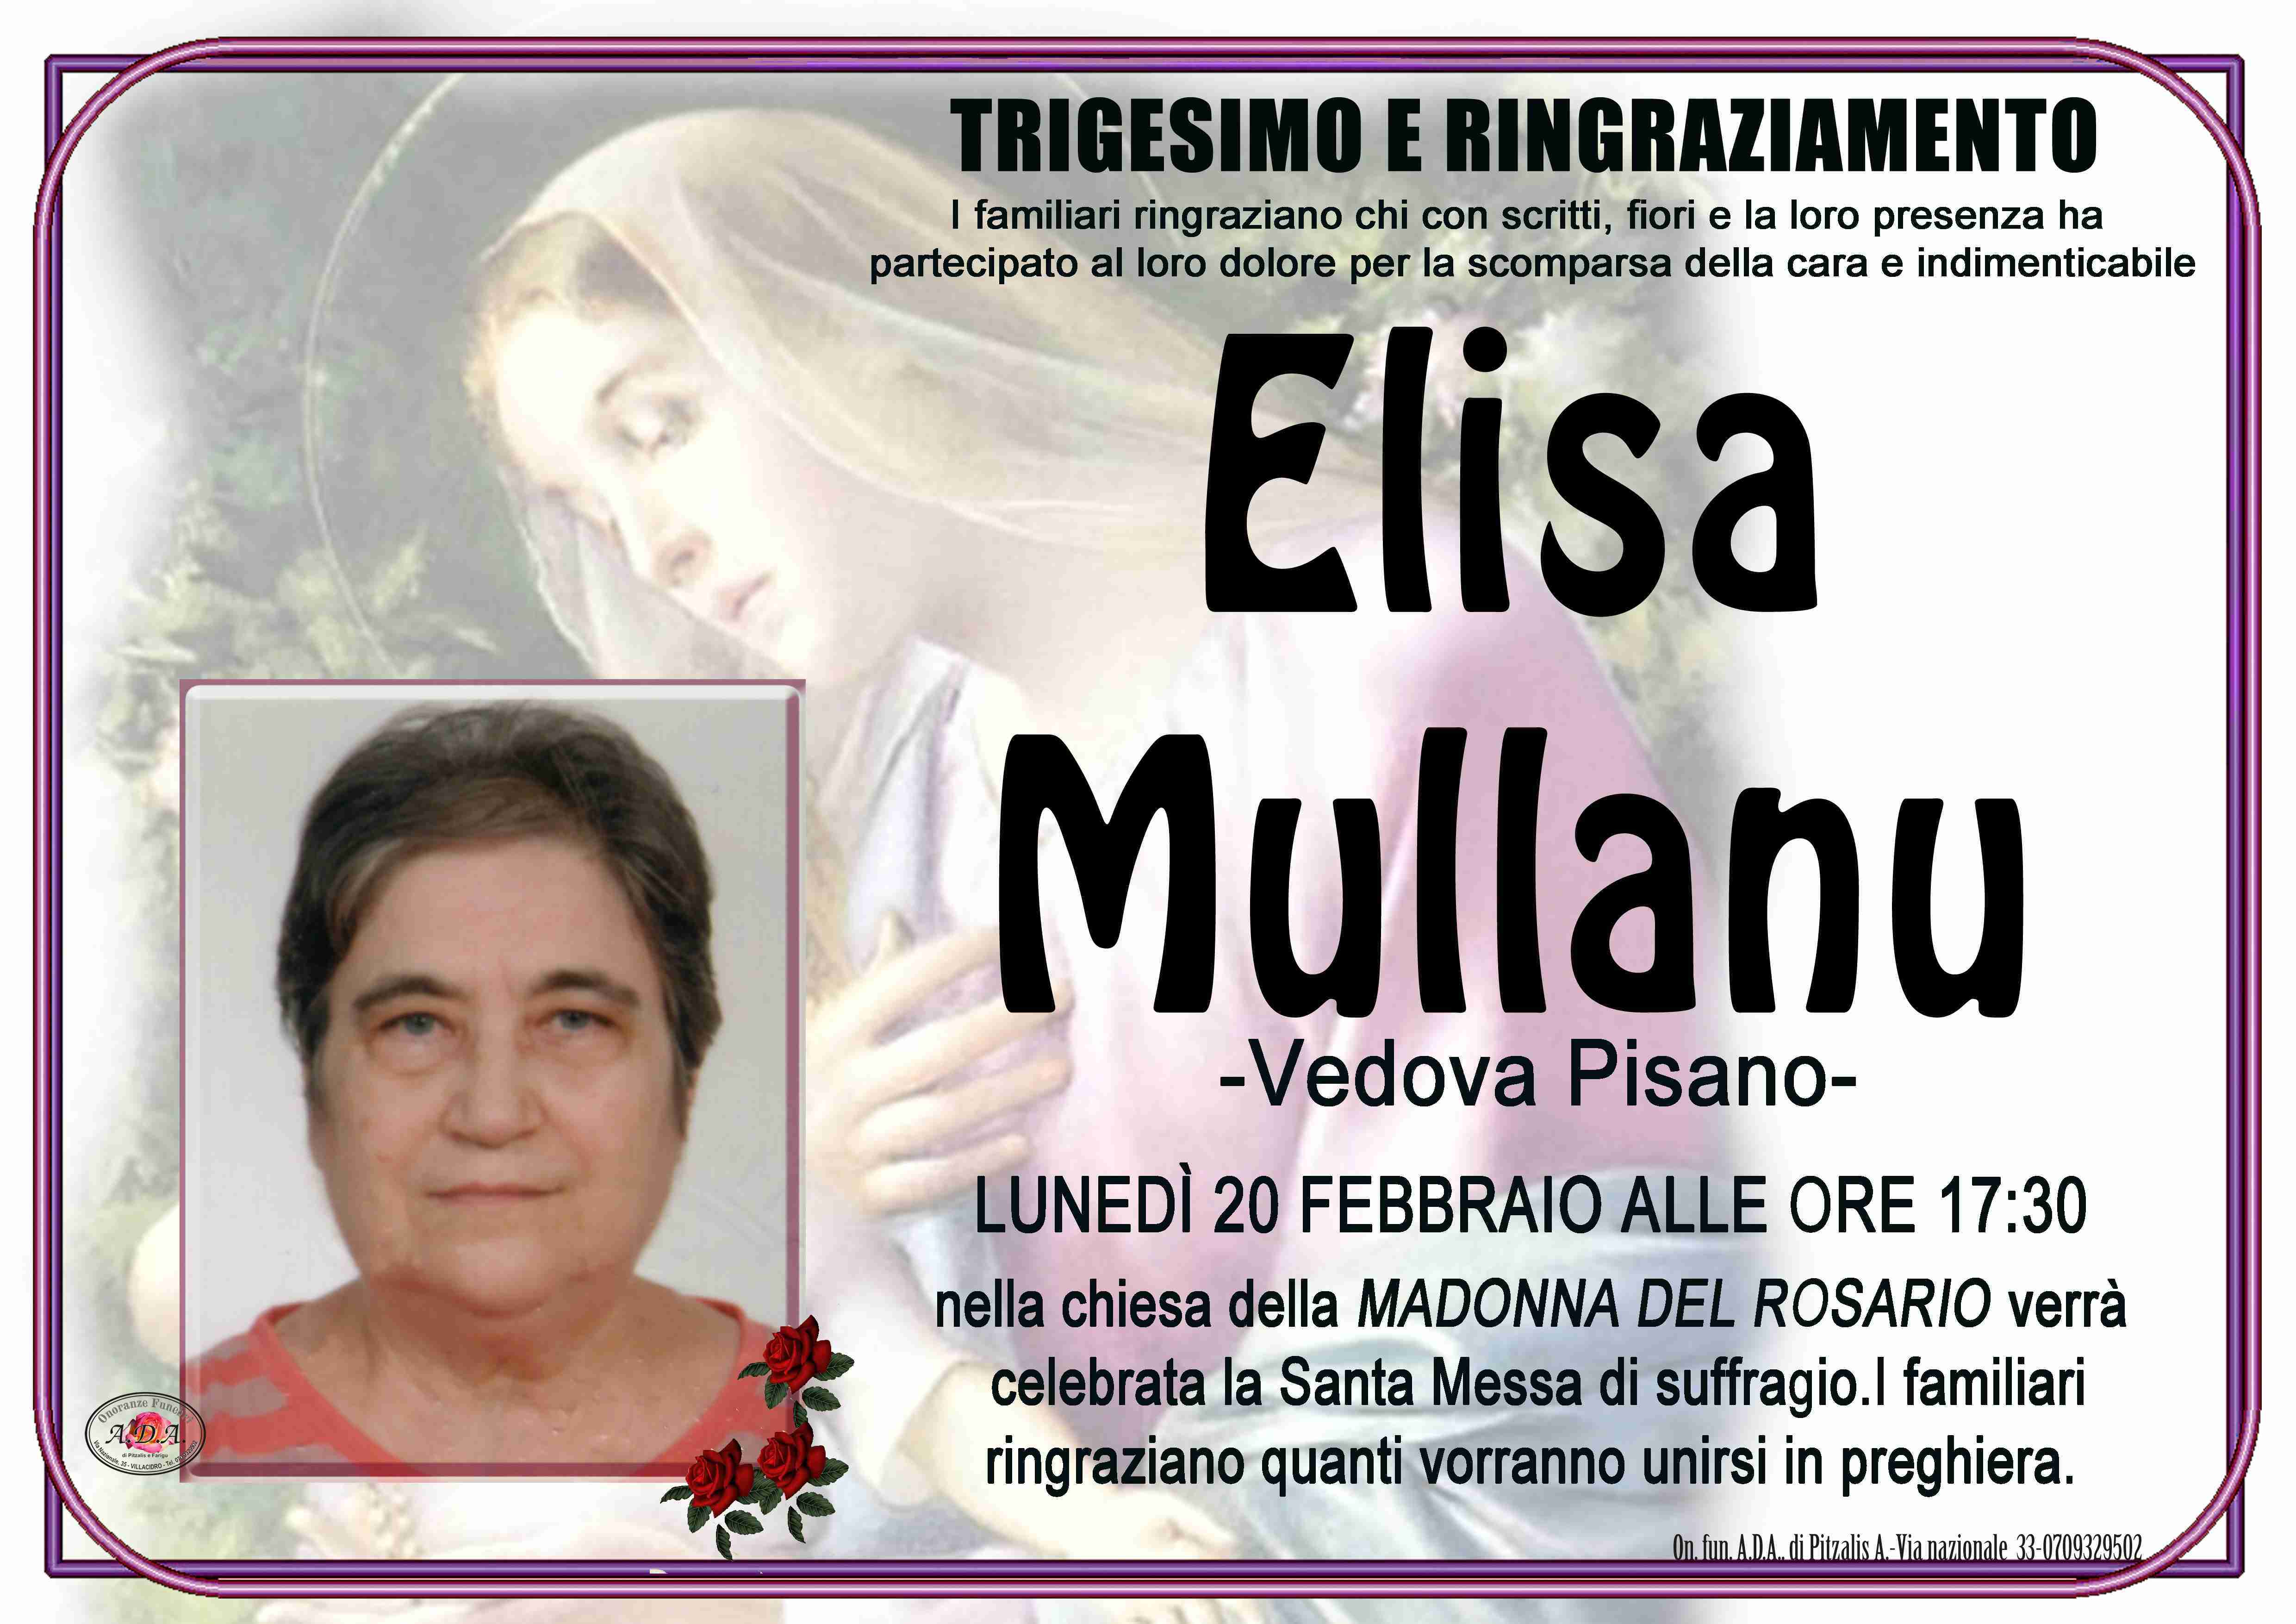 Elisa Mullanu